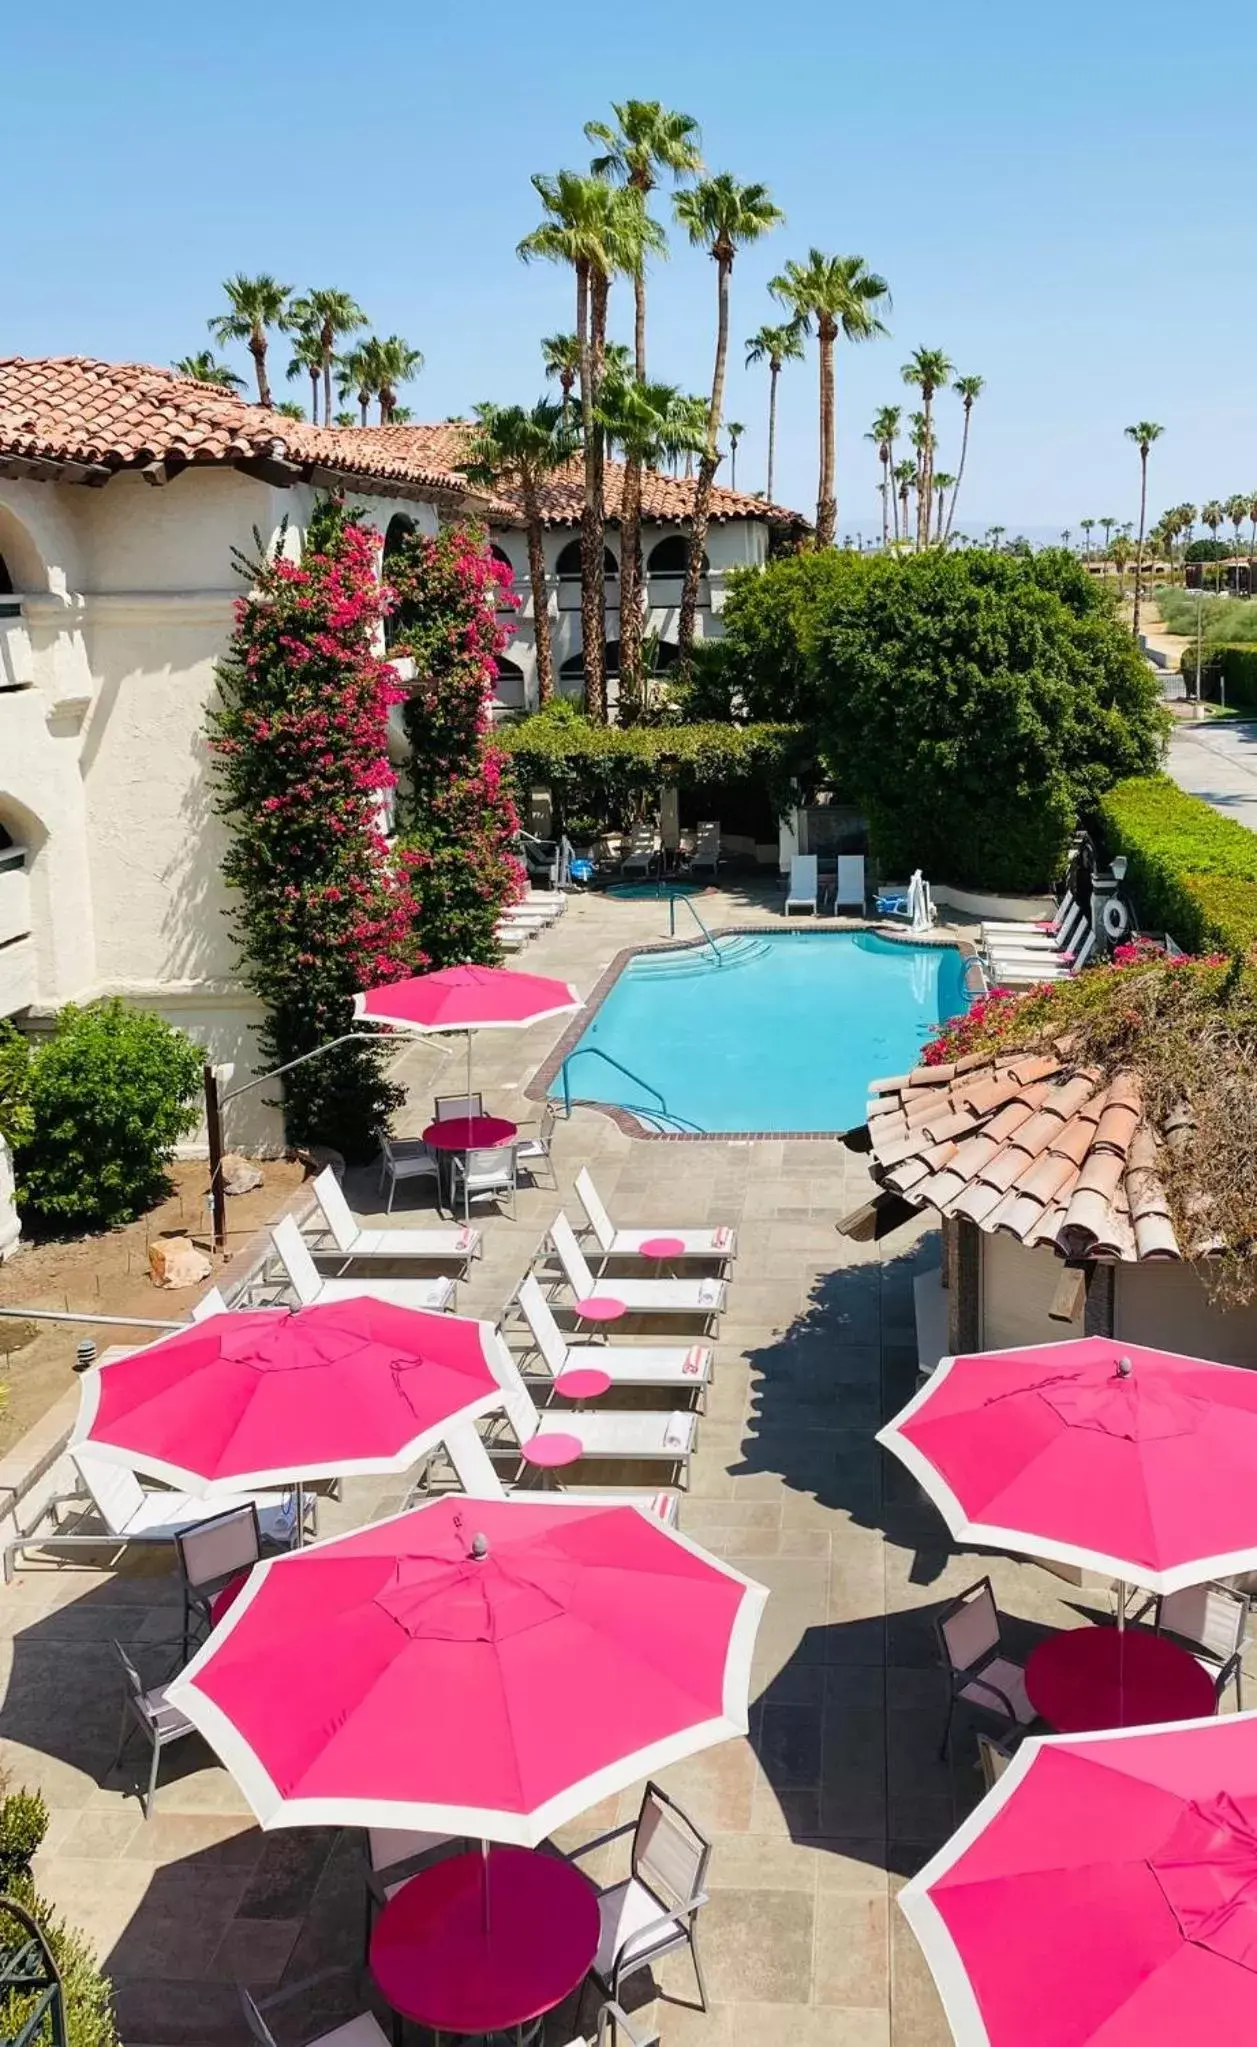 Pool View in Best Western Plus Las Brisas Hotel